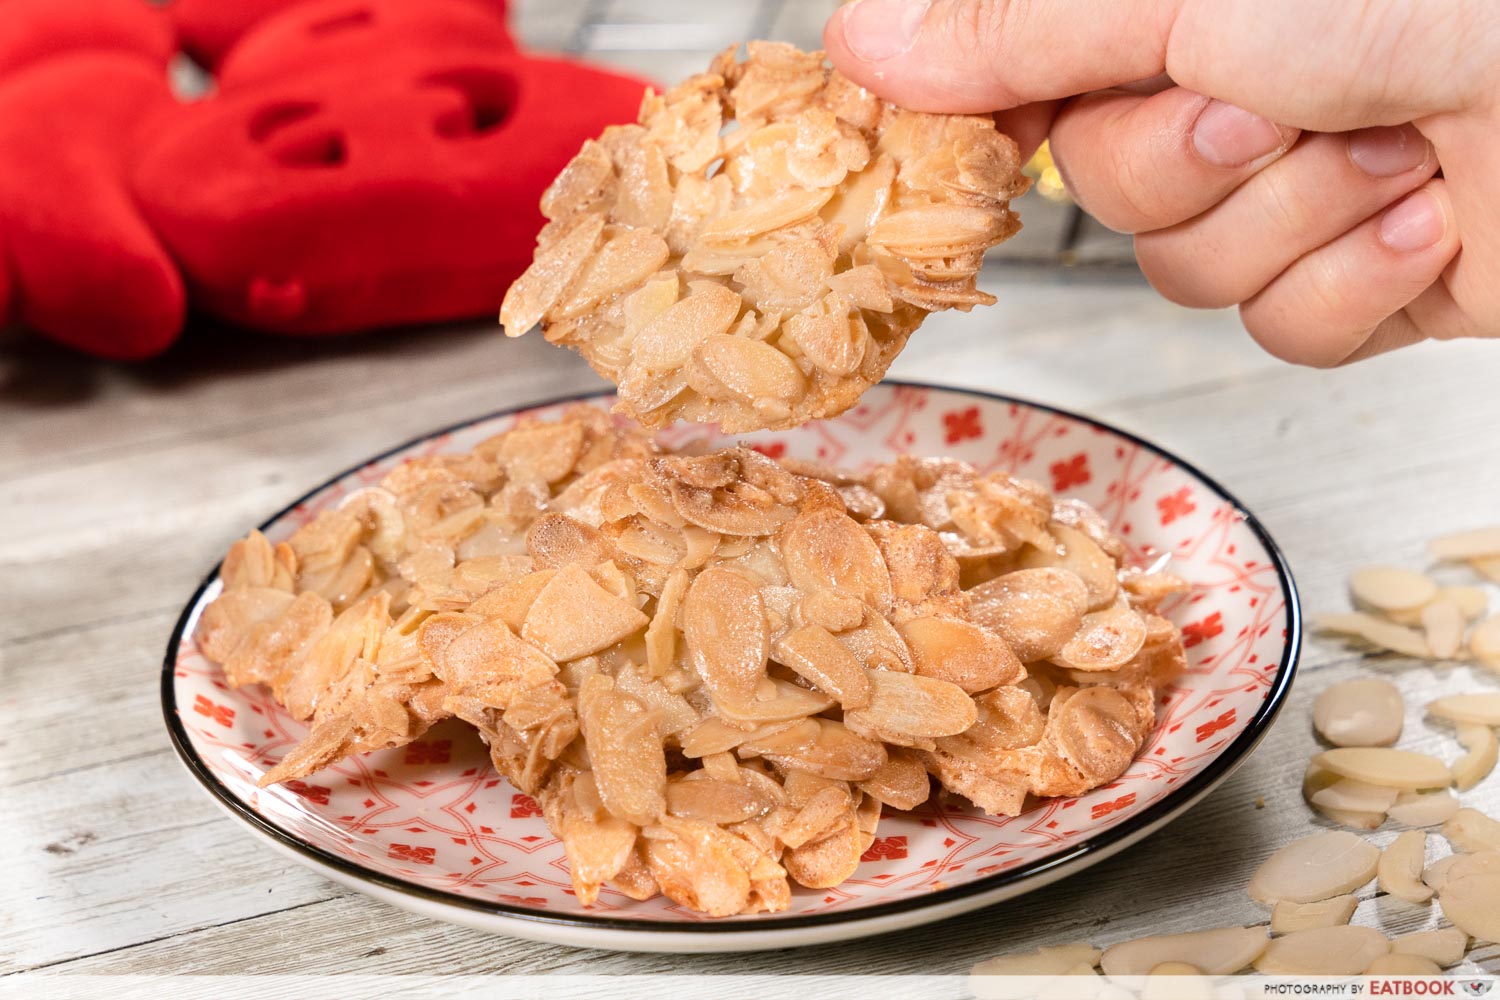 cny snack recipes - almond nut crisps